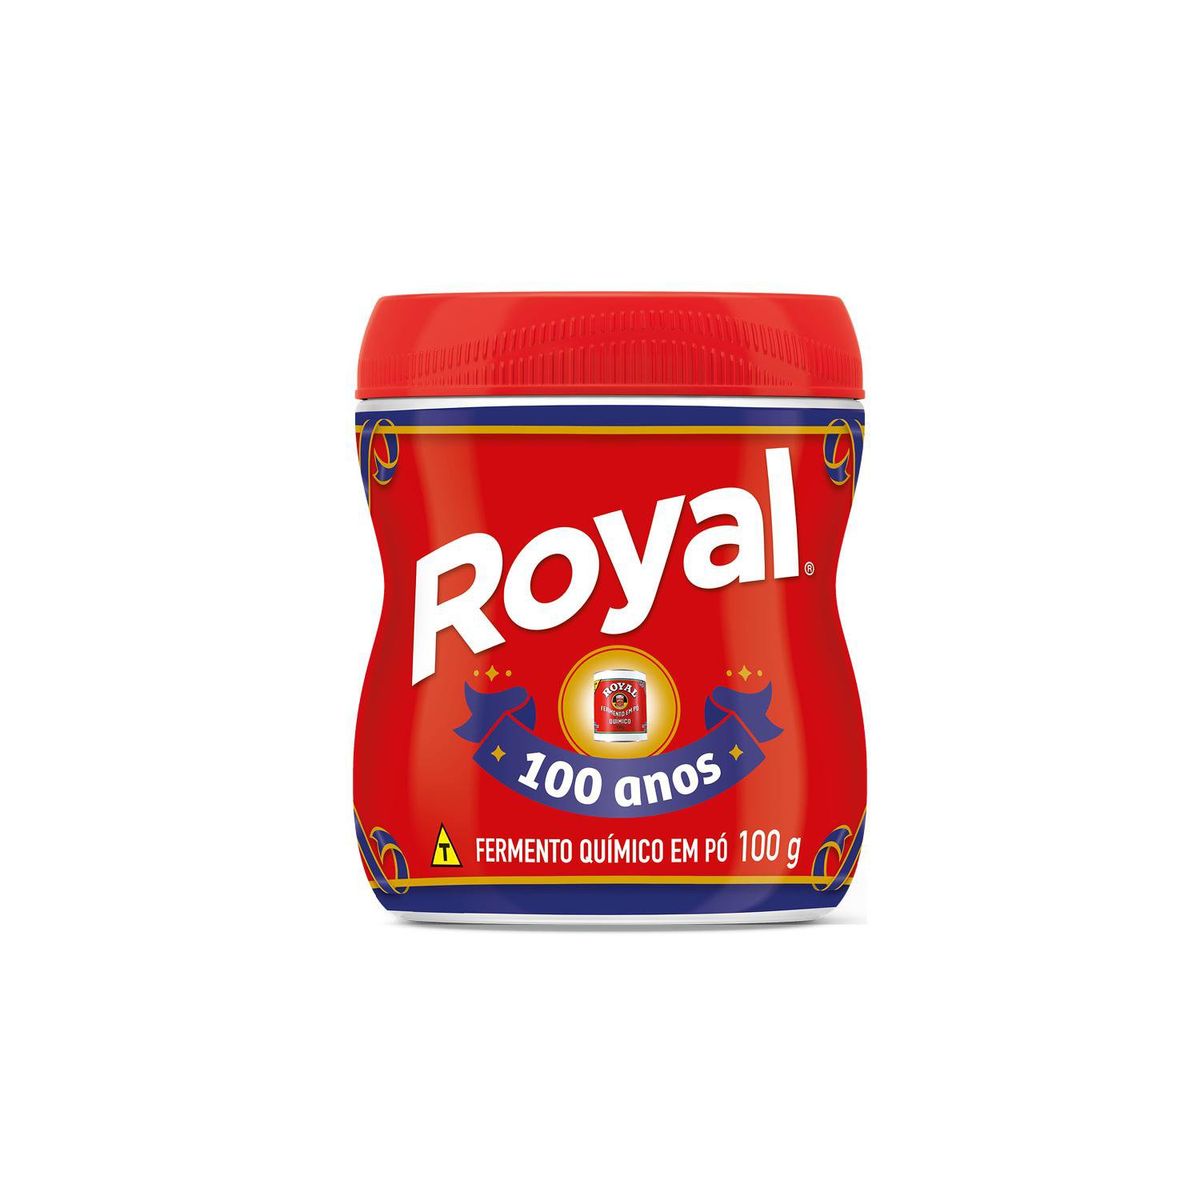 Fermento Químico Royal em Pó 100g